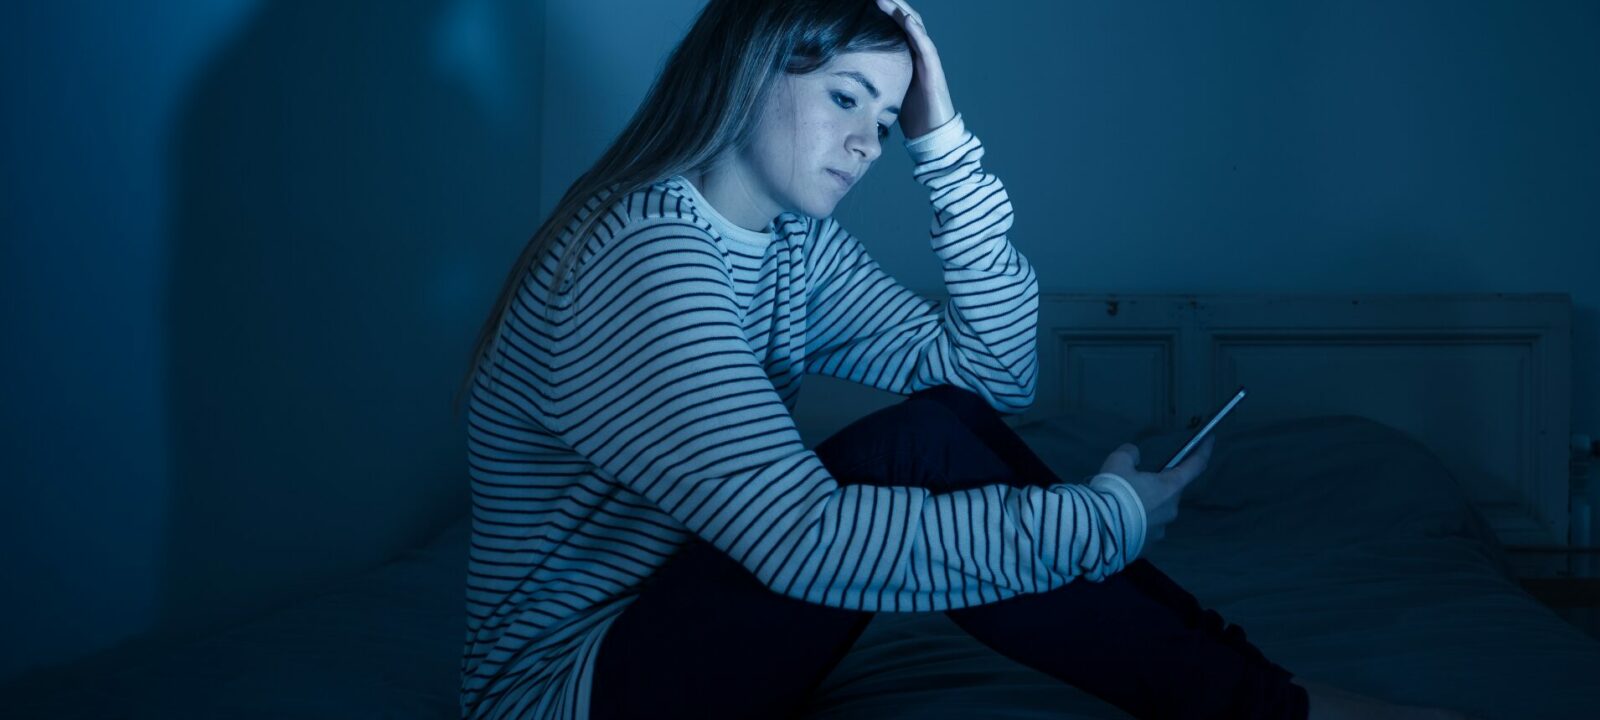 Sad teenager looking at her phone at night